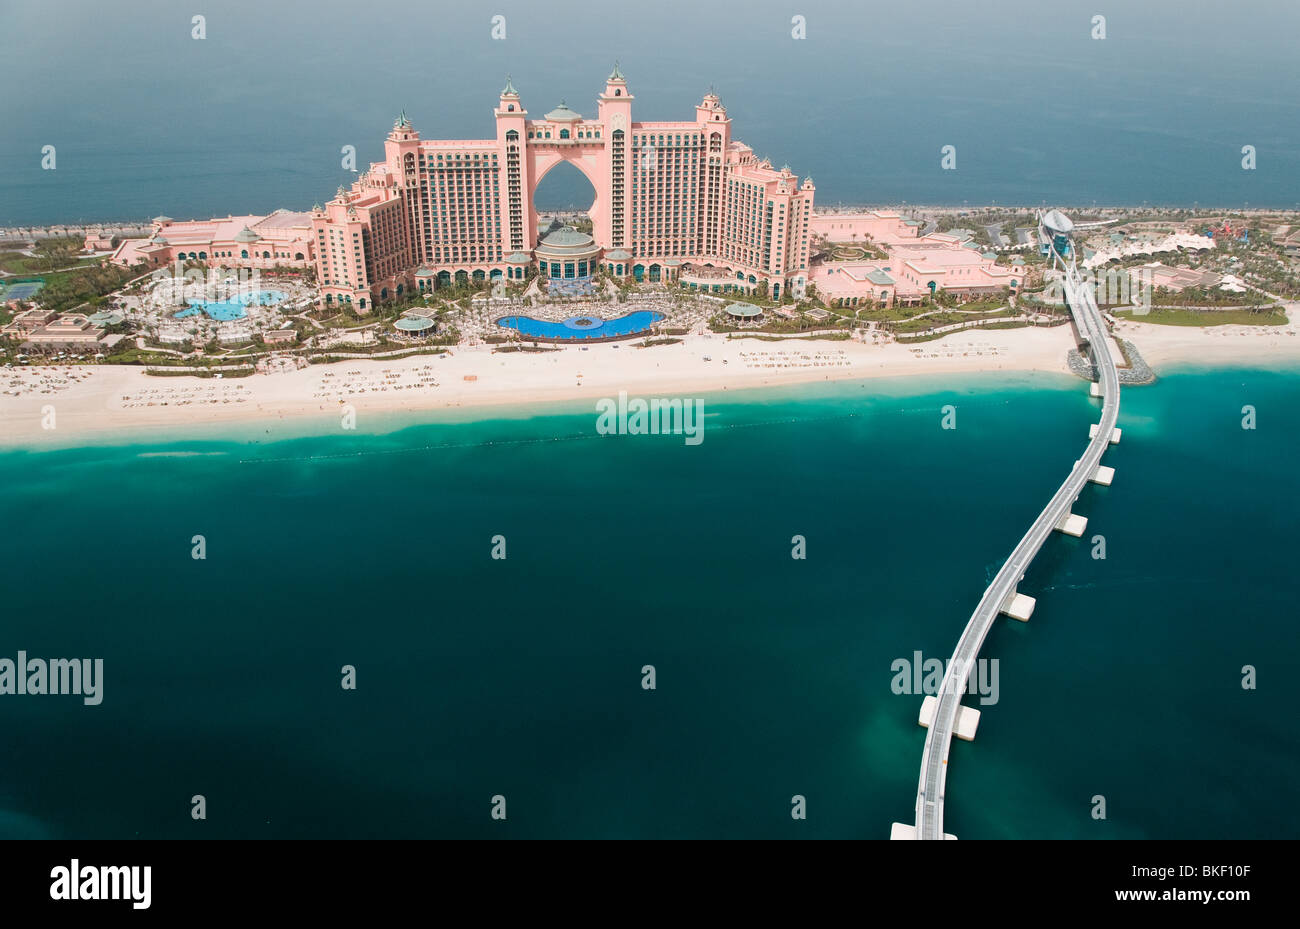 Fotografía aérea del Hotel Atlantis en la palma en Dubai, Emiratos Árabes Unidos Foto de stock